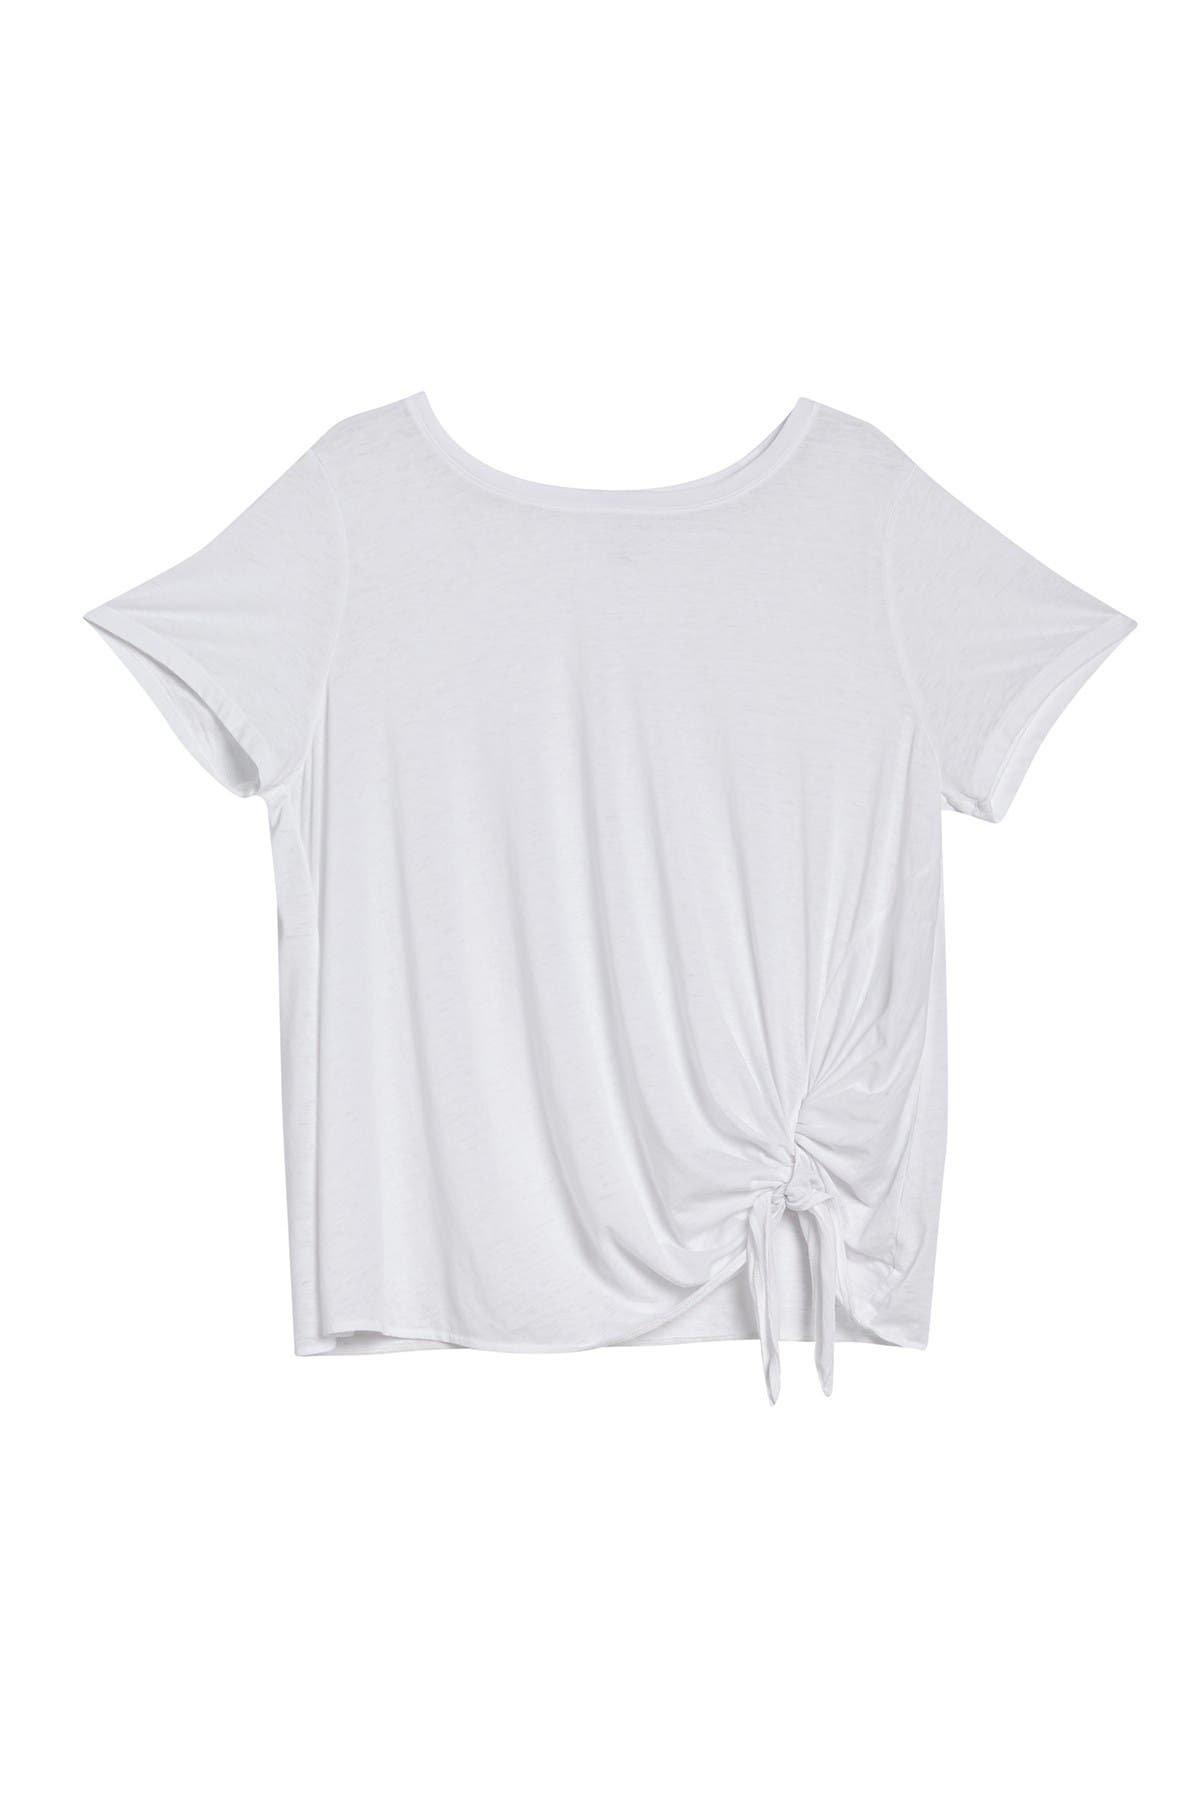 Caslon Burnout Tie Front T-shirt In White